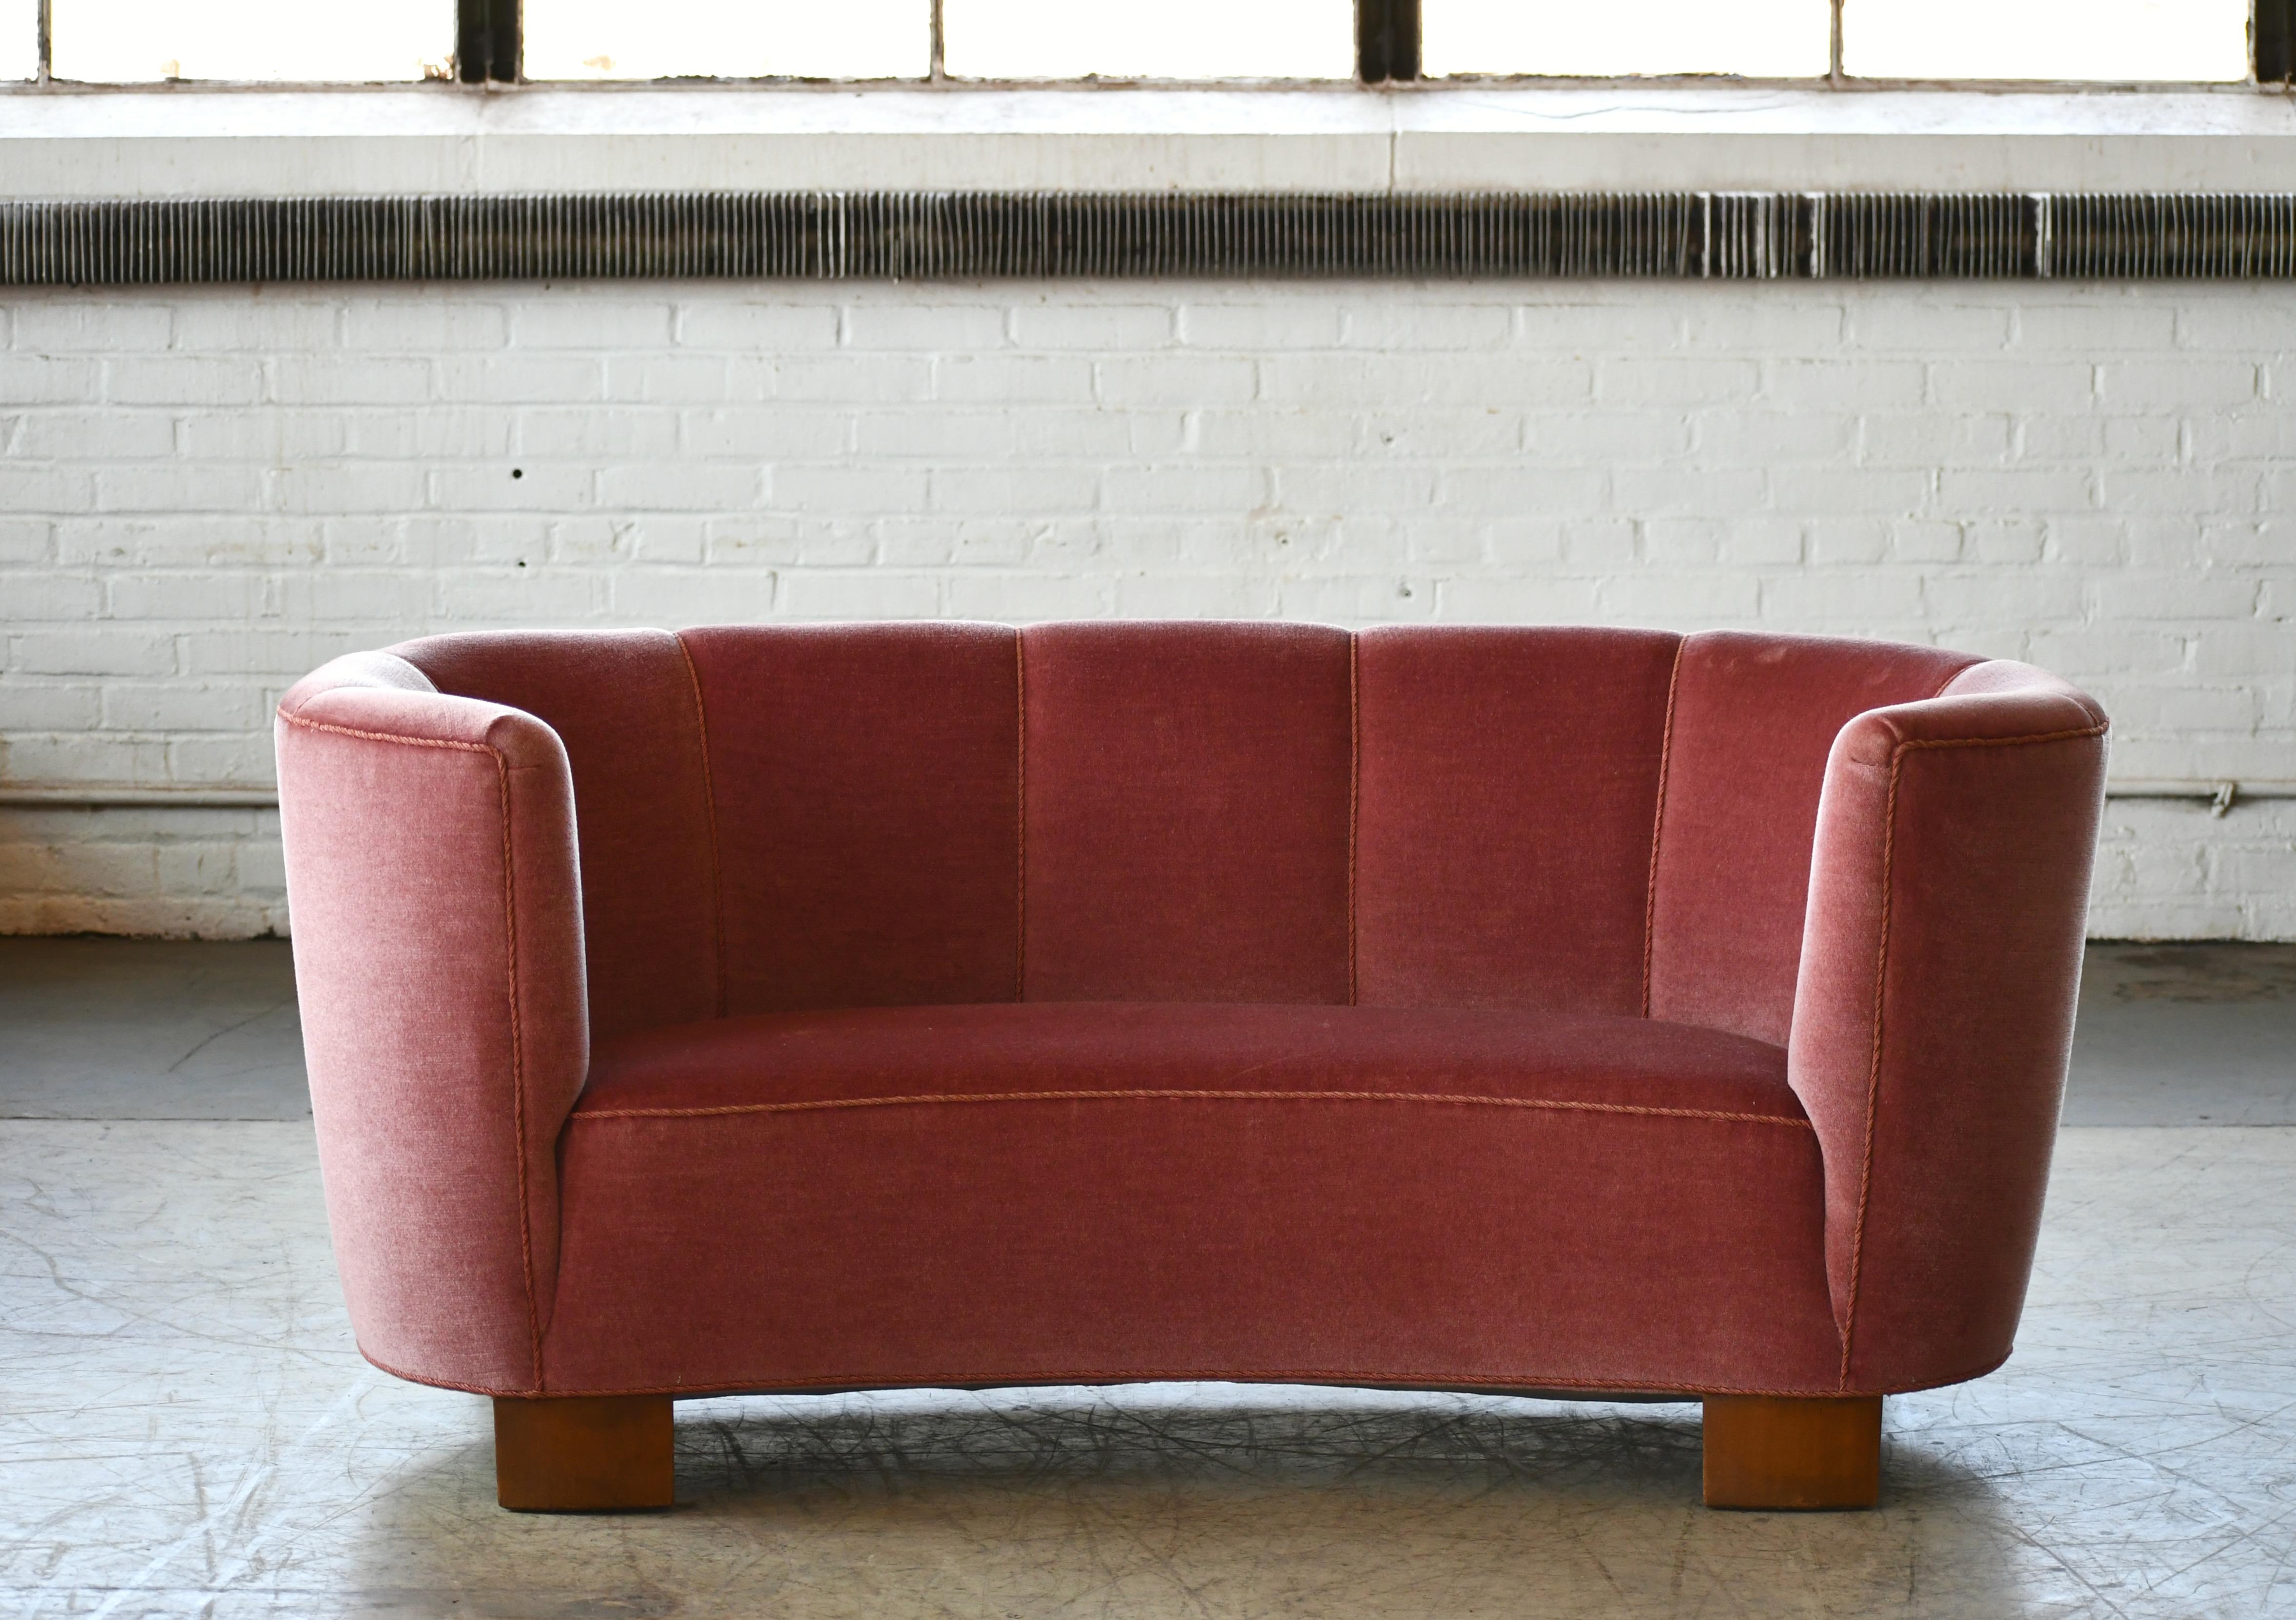 Beech Danish 1940s Boesen Style Banana Form Curved Sofa or Loveseat in Pink Velvet